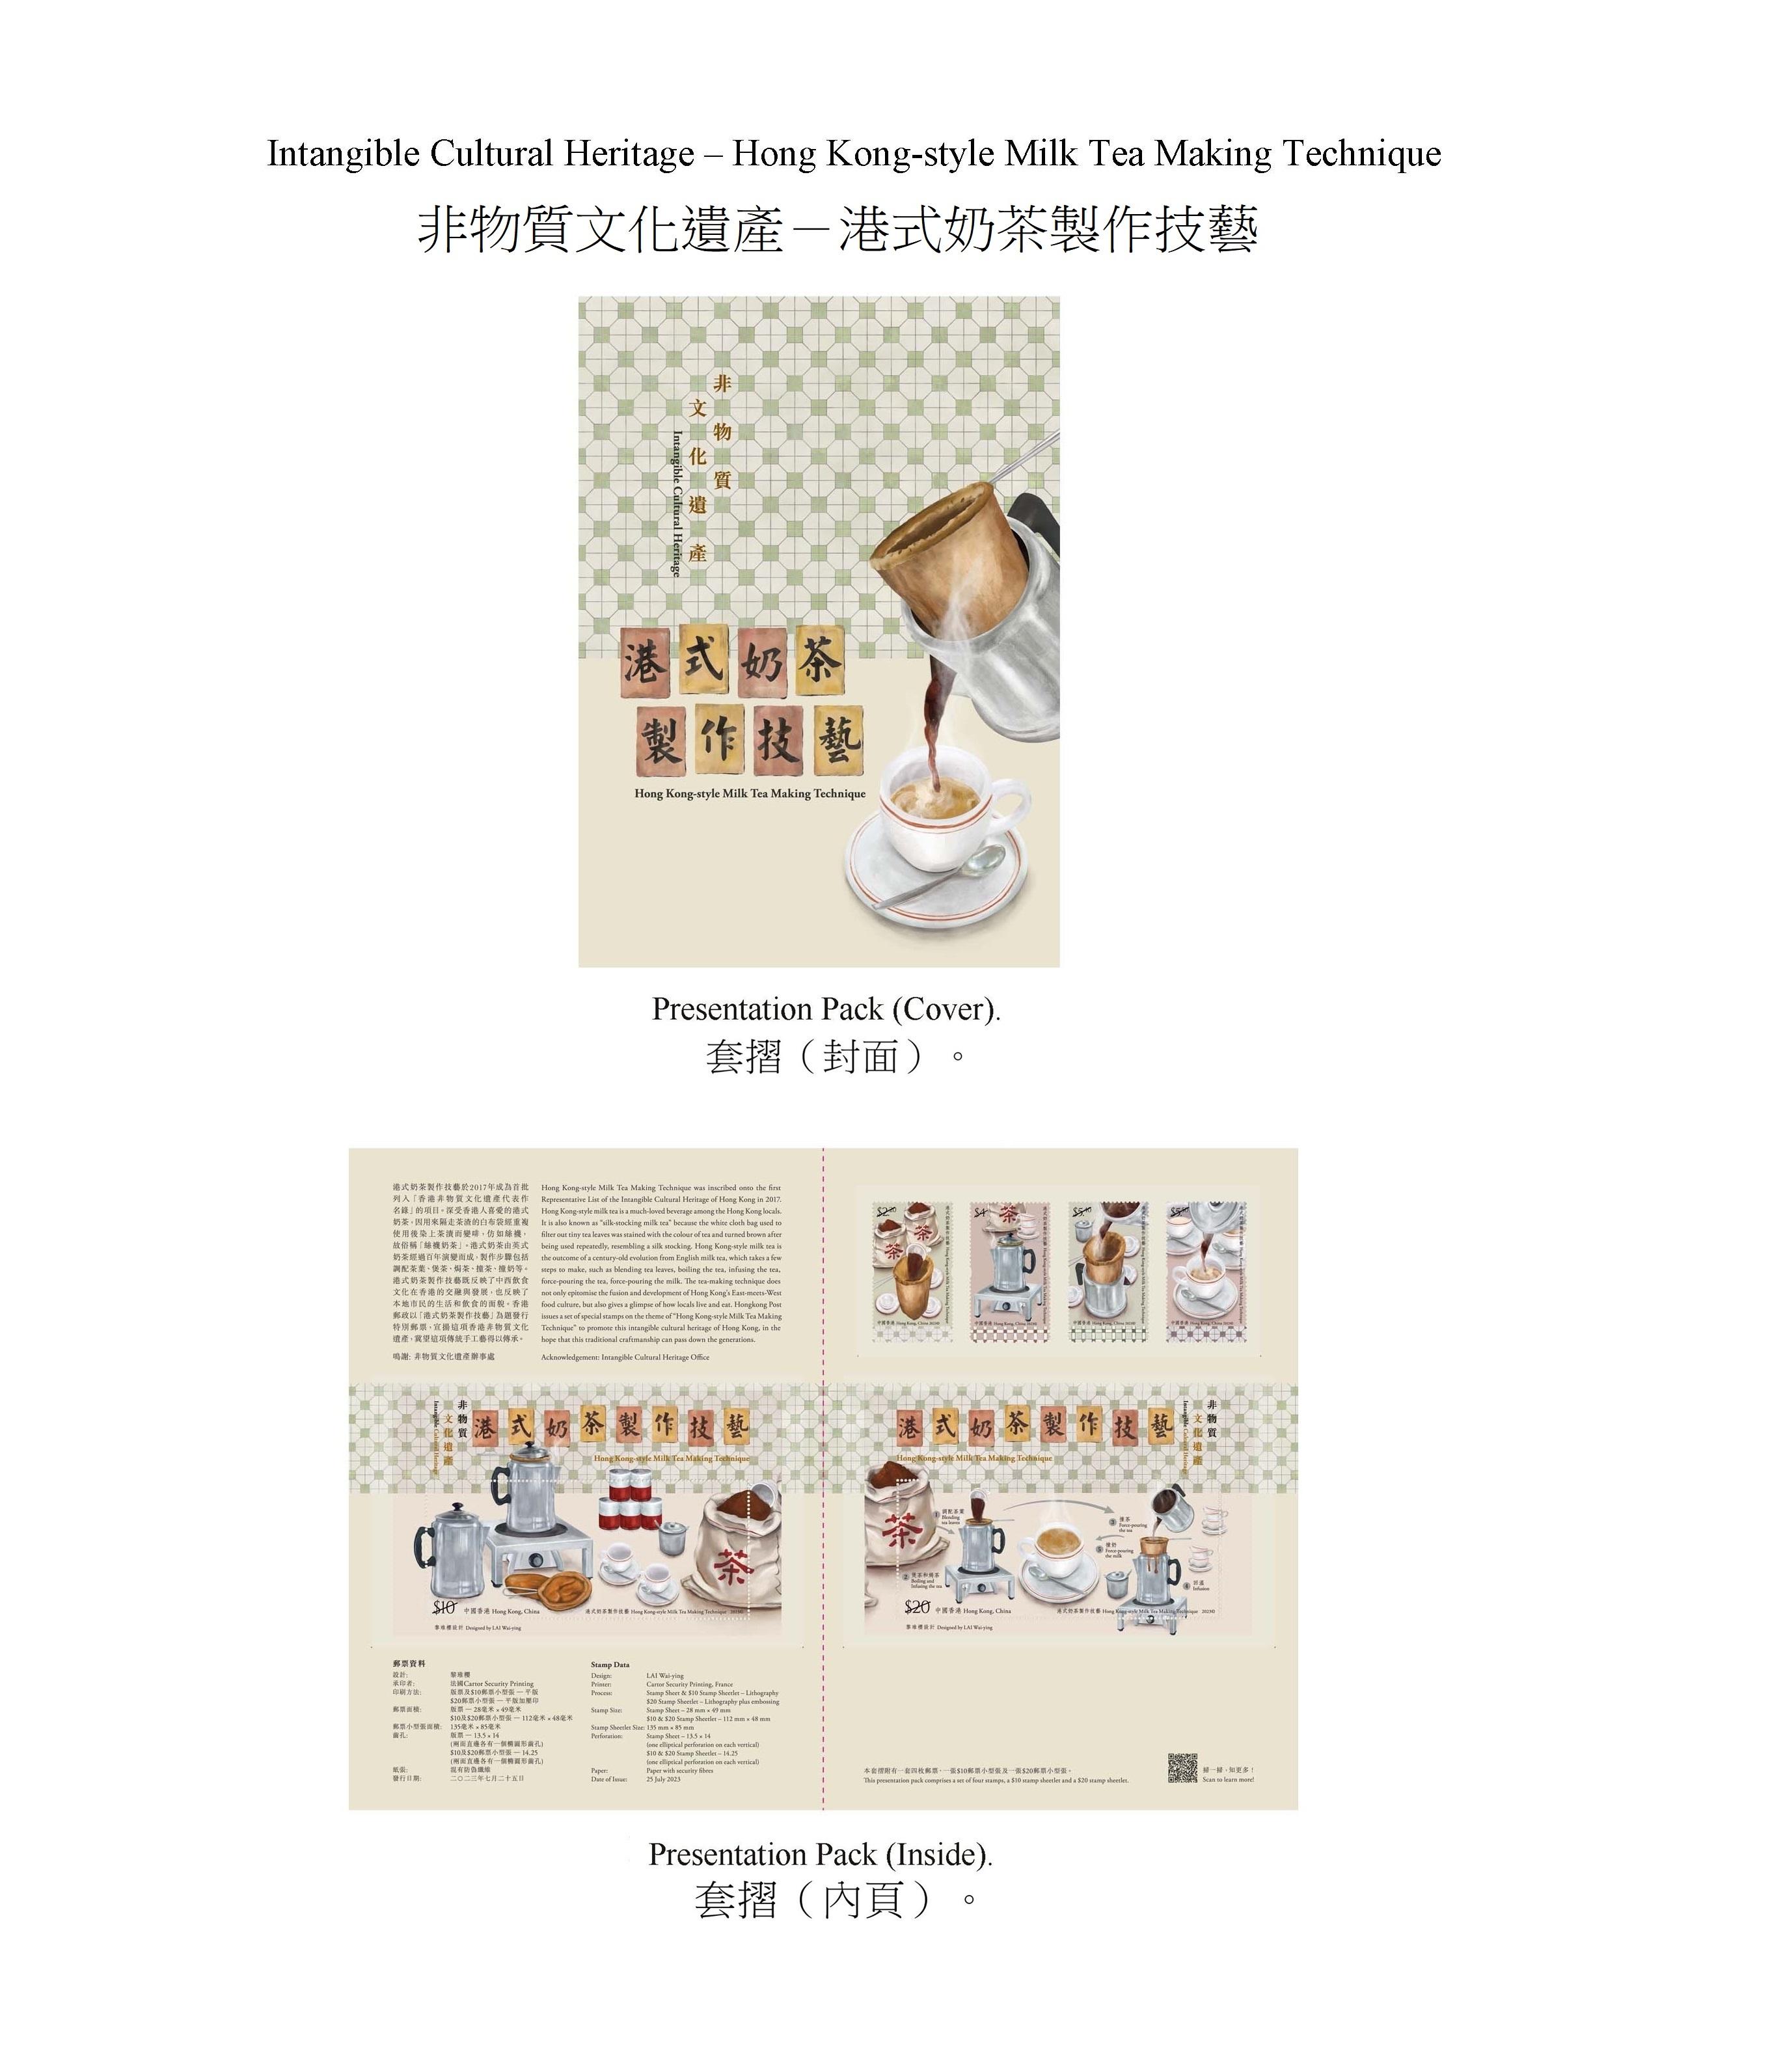 香港郵政七月二十五日（星期二）發行以「非物質文化遺產——港式奶茶製作技藝」為題的特別郵票及相關集郵品。圖示套摺。